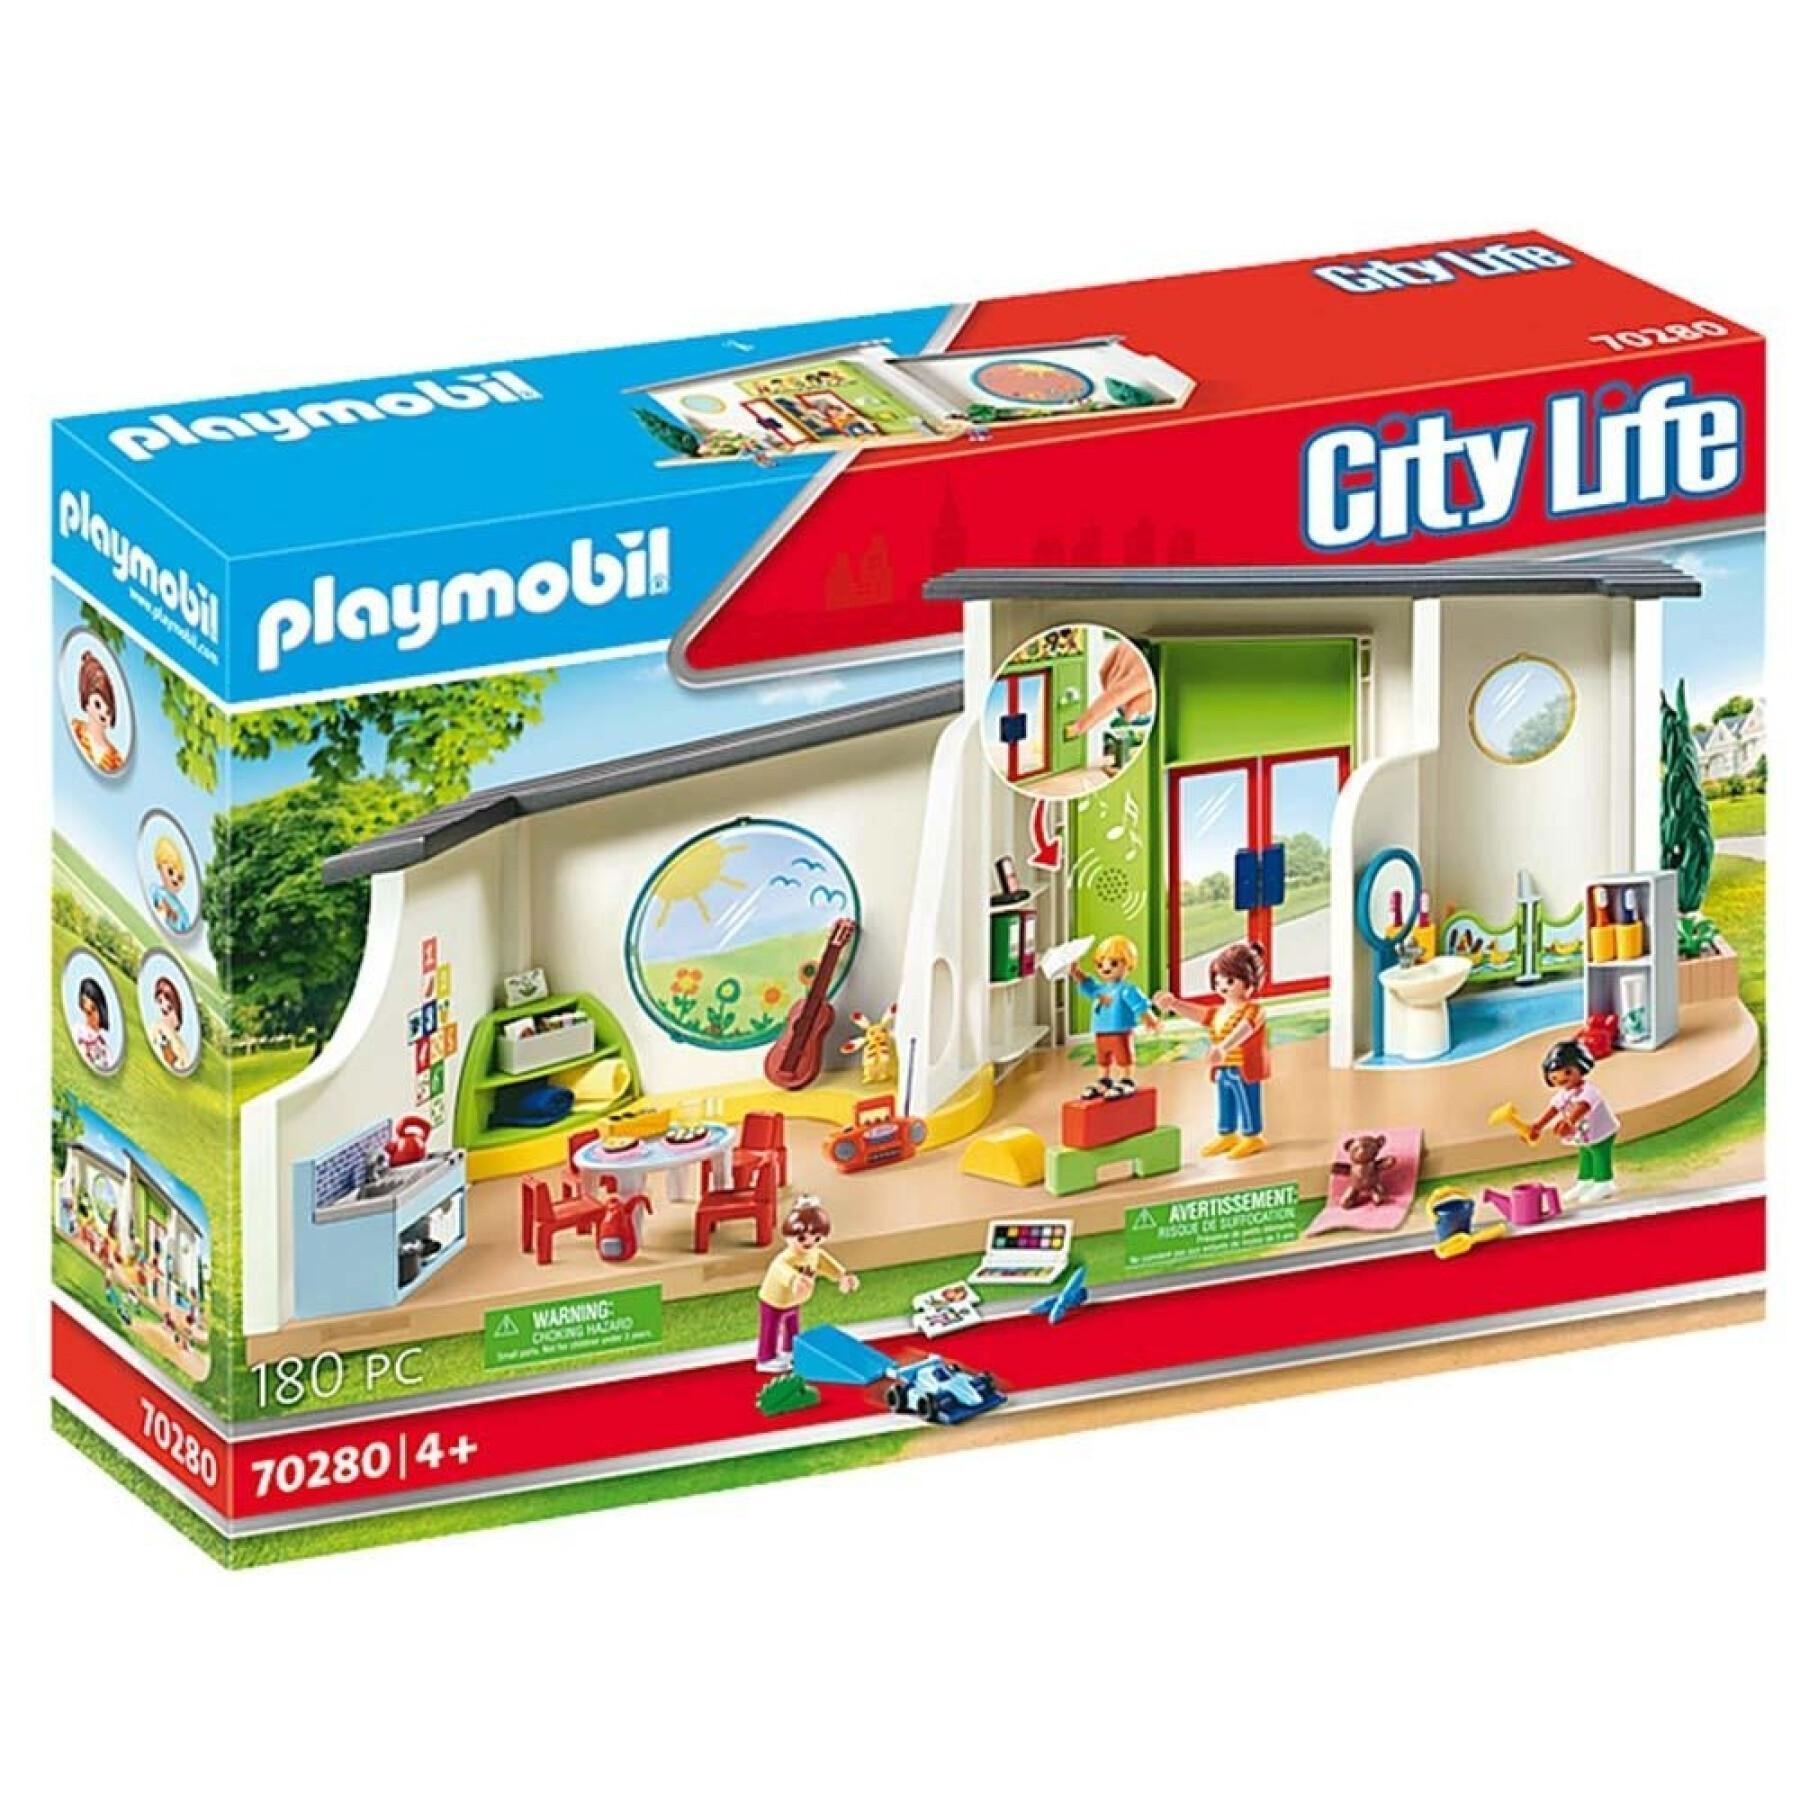 Daghem Rainbow Playmobil City Life